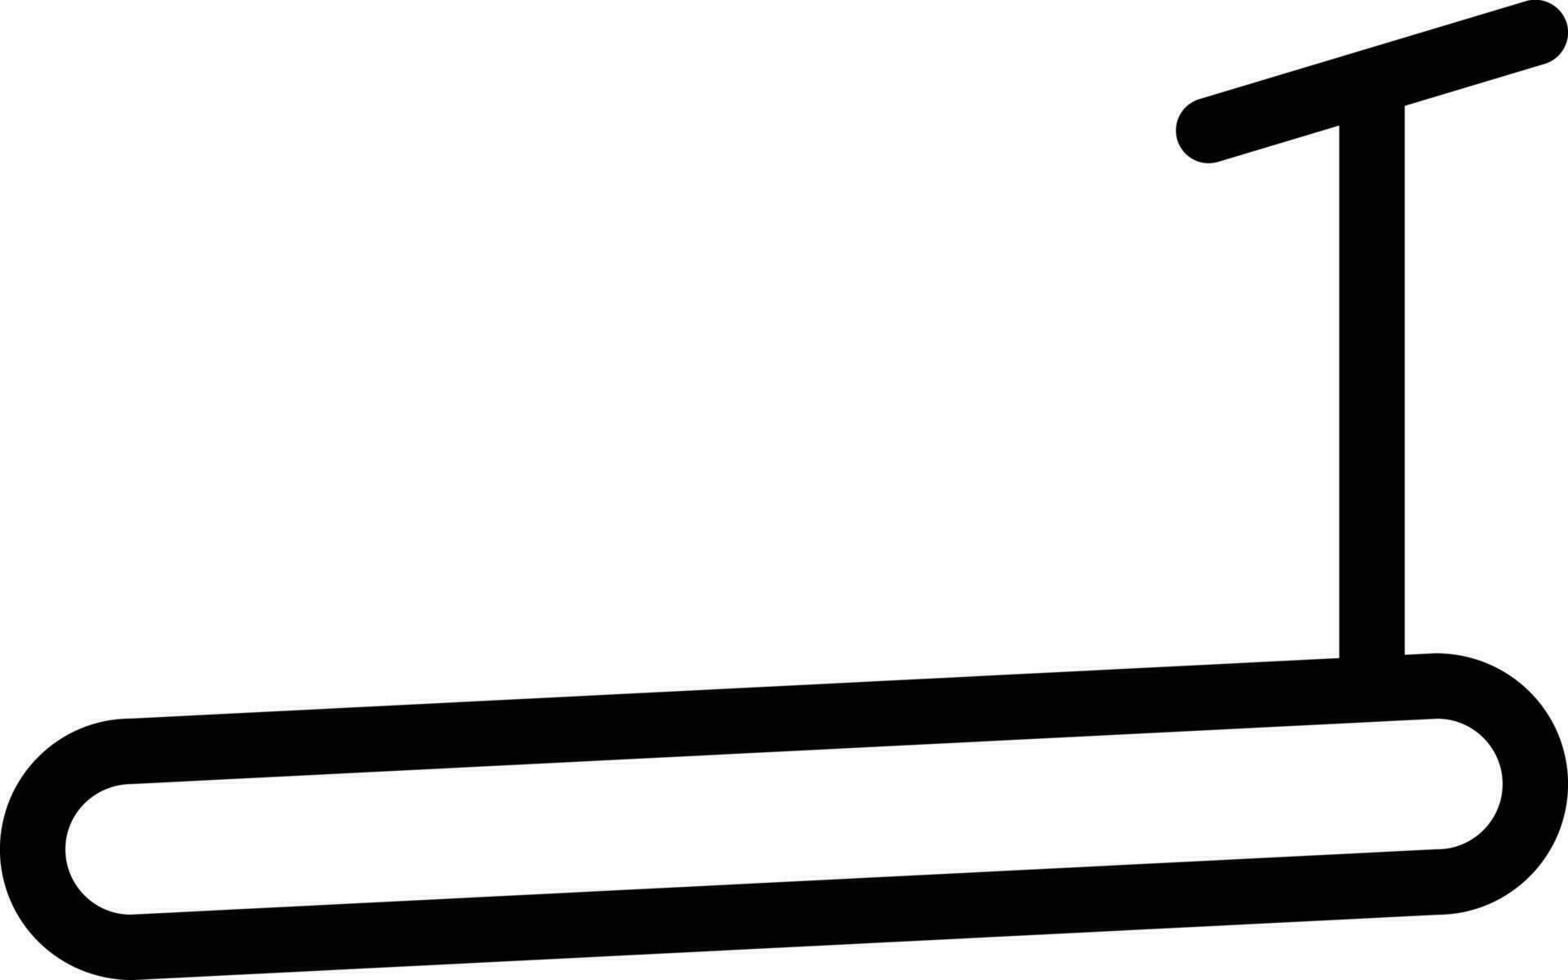 illustrazione vettoriale del tapis roulant su uno sfondo. simboli di qualità premium. icone vettoriali per il concetto e la progettazione grafica.